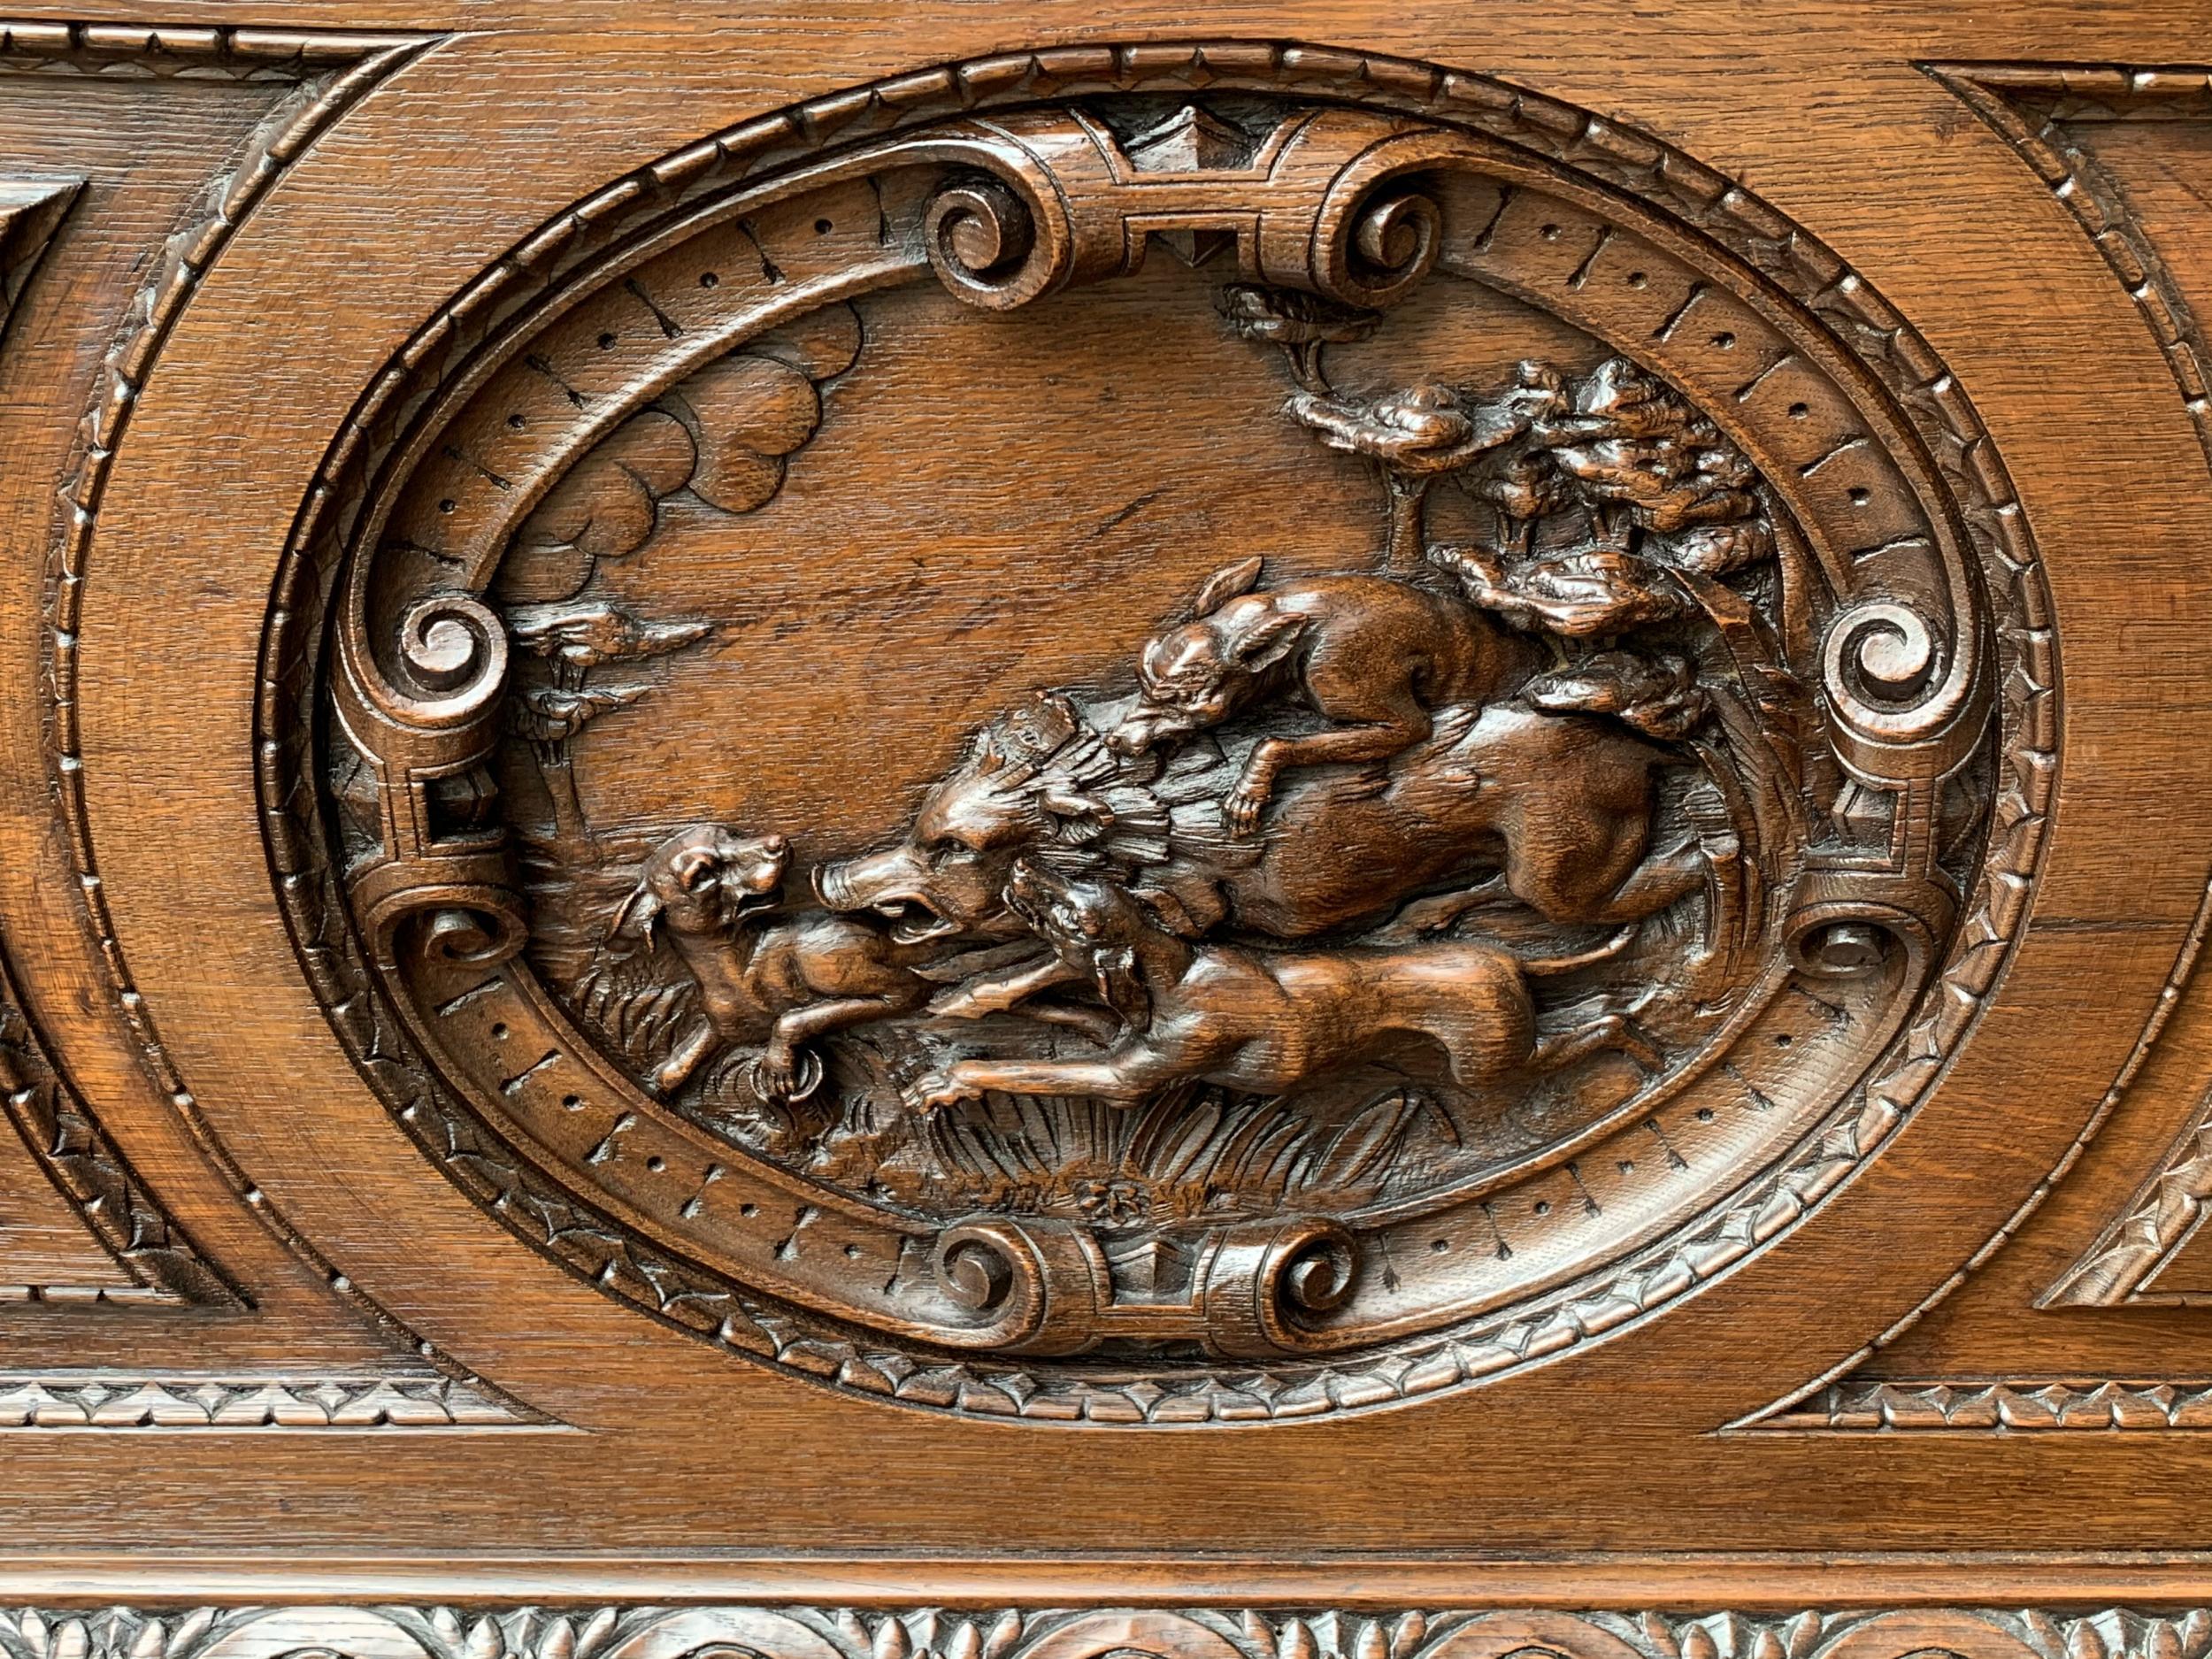 Renaissance Antique French Carved Oak Hall Bench Black Forest Boar Hunt Hound Dog Settle Pew